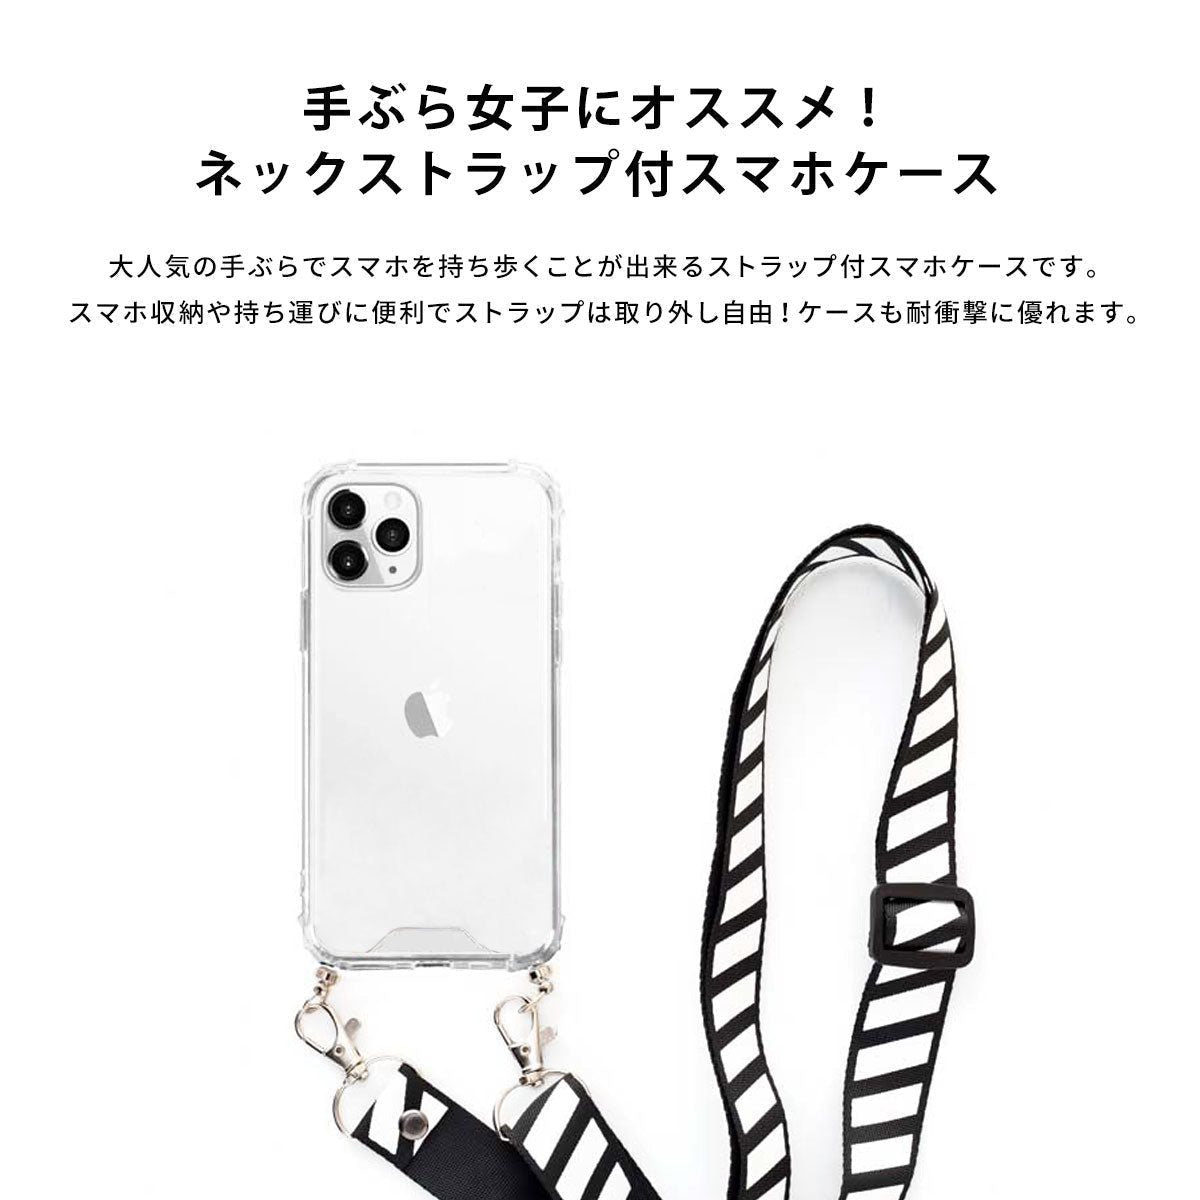 【手ぶら派に】ネックストラップ スマホケース  iPhone13 iPone12 かわいい おしゃれ  ネックストラップ付き アマビエ 名入れ